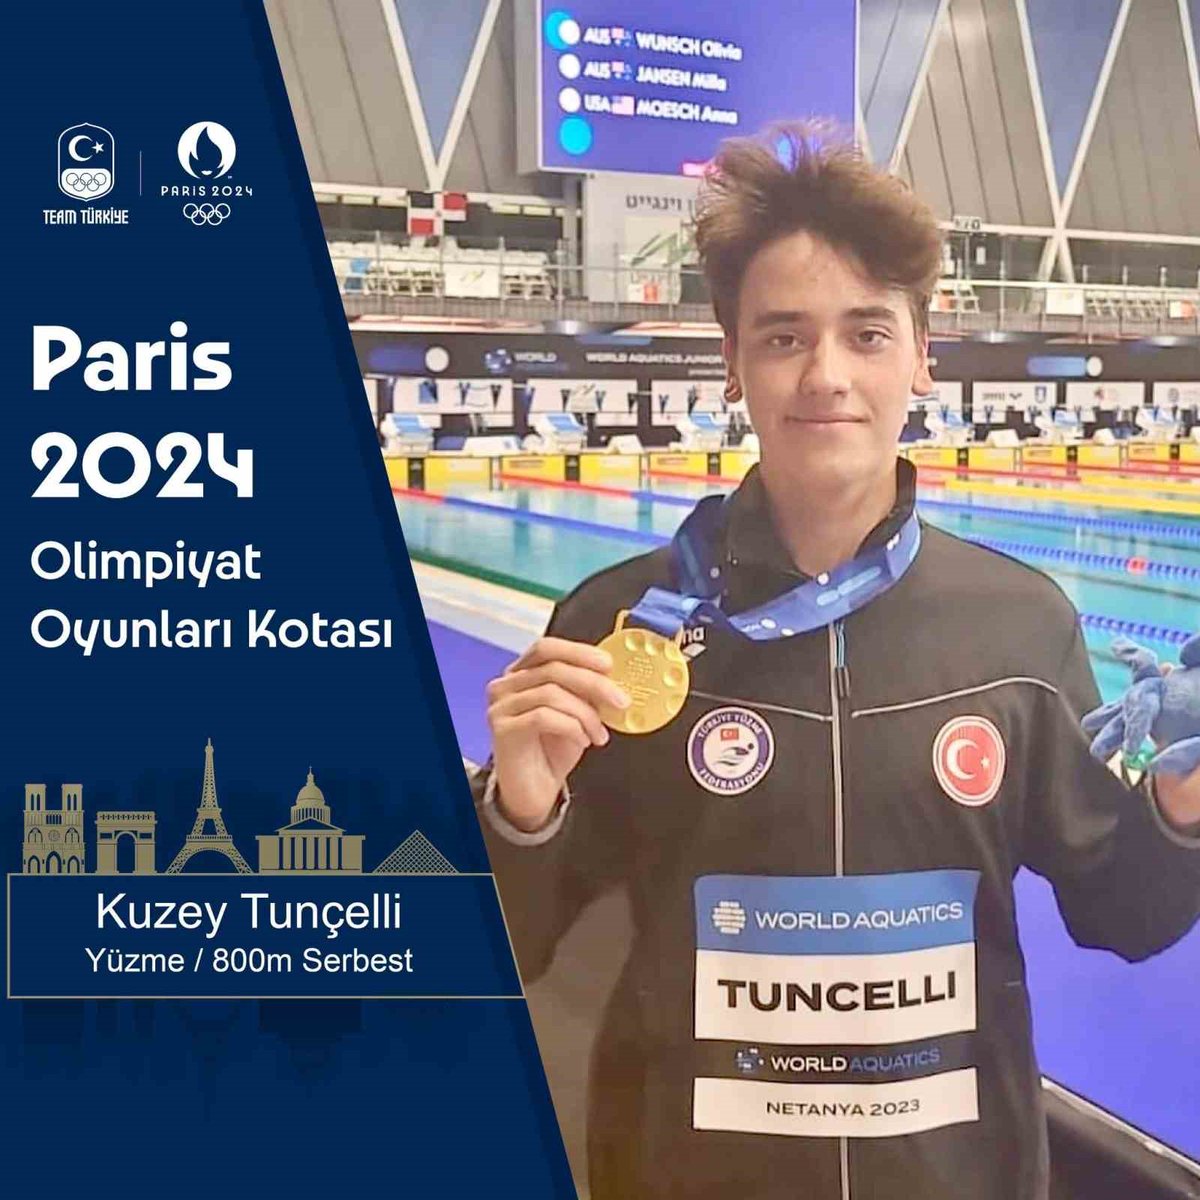 Türkiye şampiyonlukları bulunan milli yüzücü Kuzey Tunçelli,geçen seneki milli takım seçmelerinde 1500 metre serbest stilde 14.56.67'lik derecesiyle 15-16 yaş,17-18 yaş ve açık yaş Türkiye rekorlarını kırarak 2024 Paris Olimpiyatları'na vize aldı.
#KuzeyTunçelli
#ParisOlympic2024